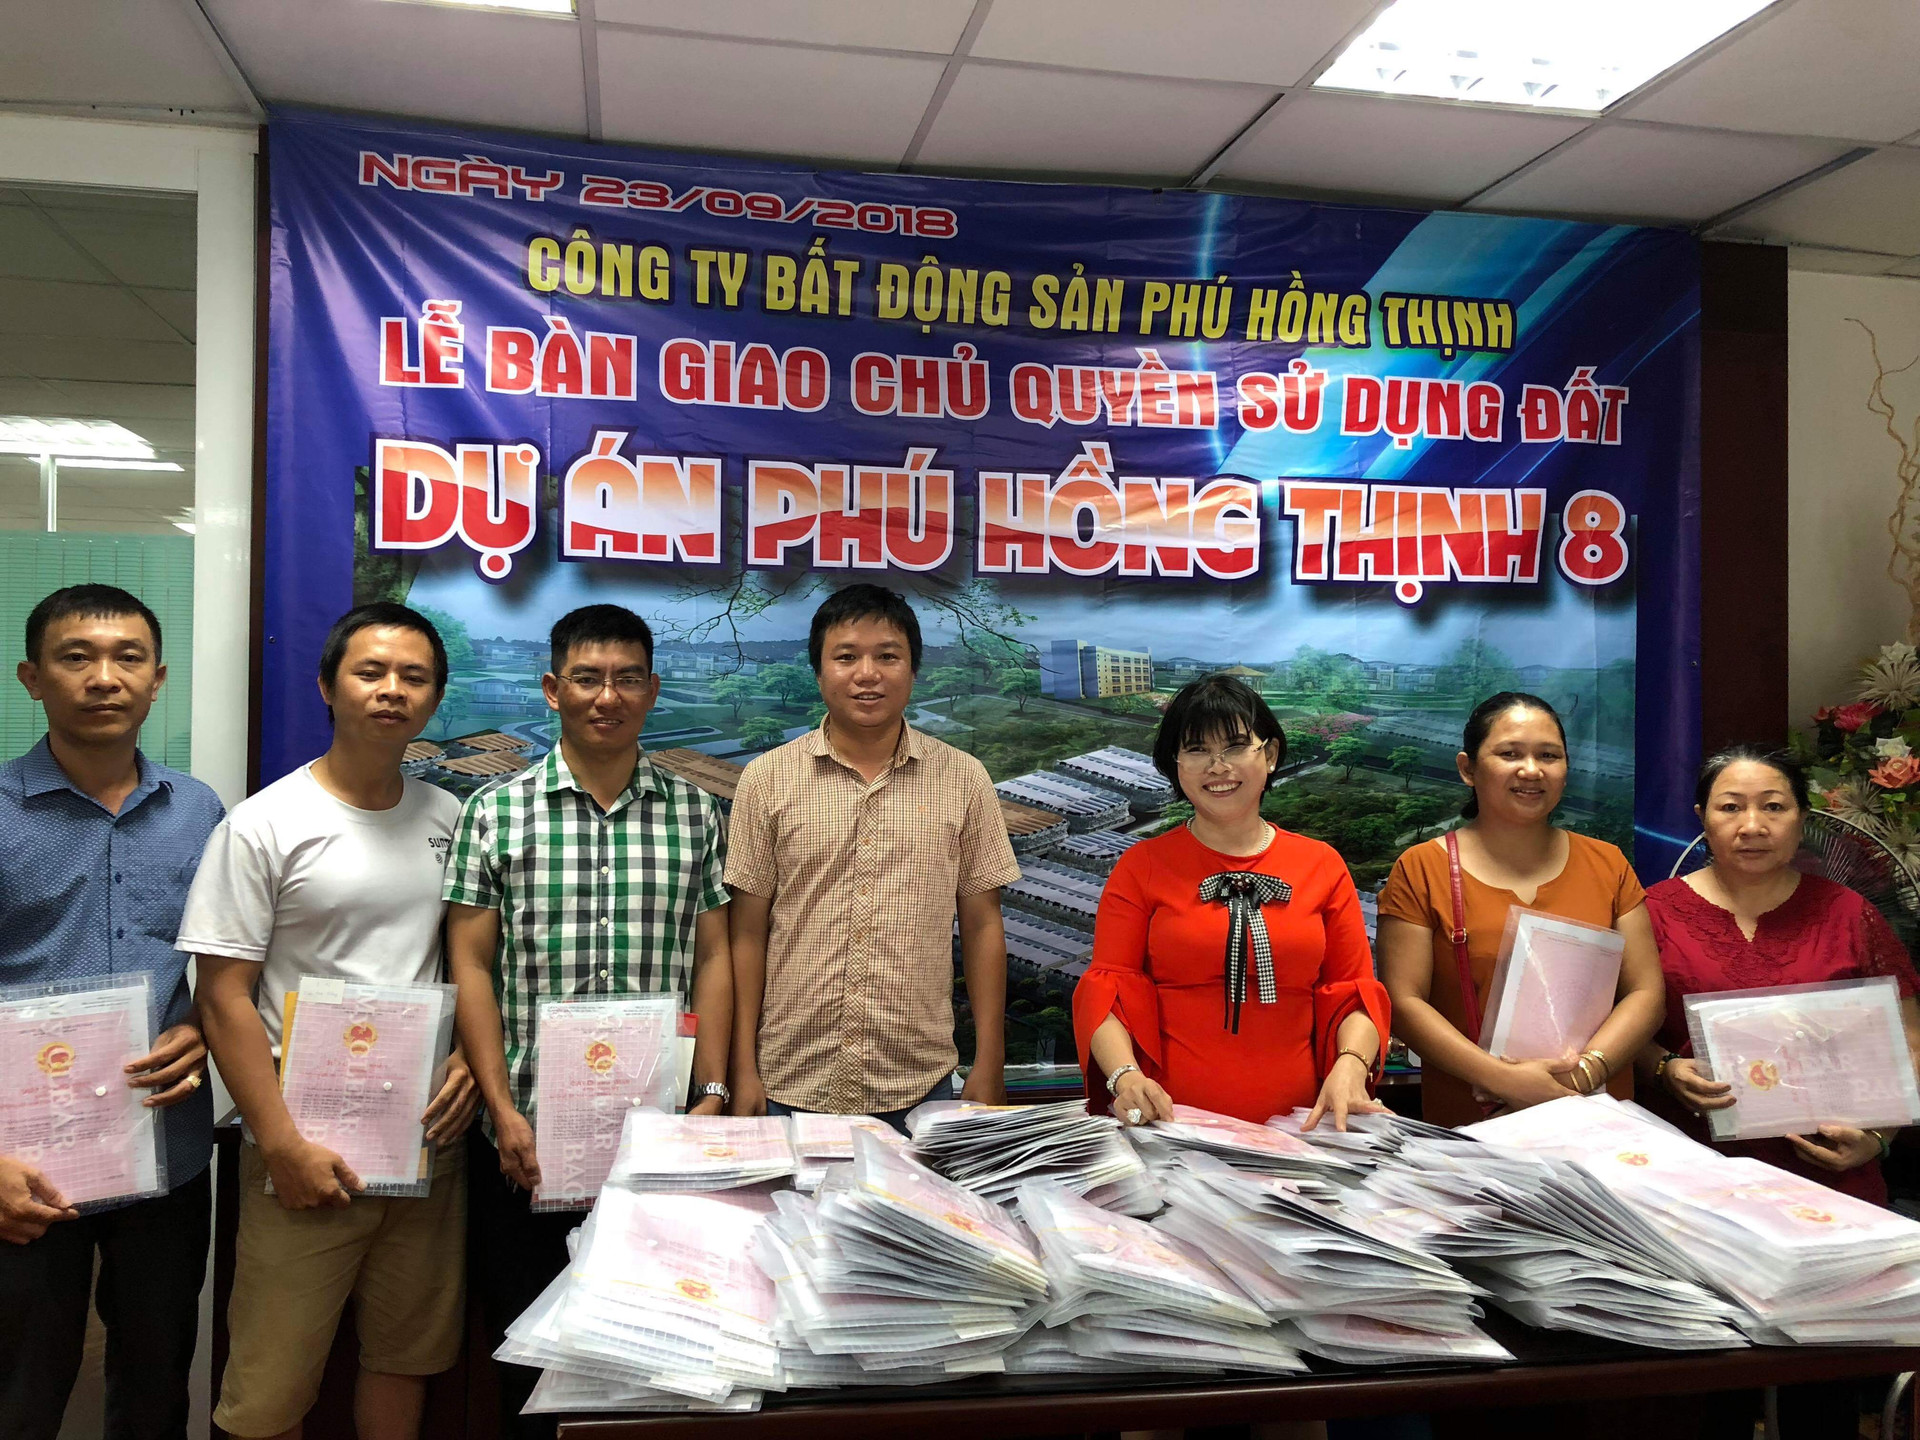 Dự án Phú Hồng Thịnh: Giao nền liền tay cầm ngay chủ quyền